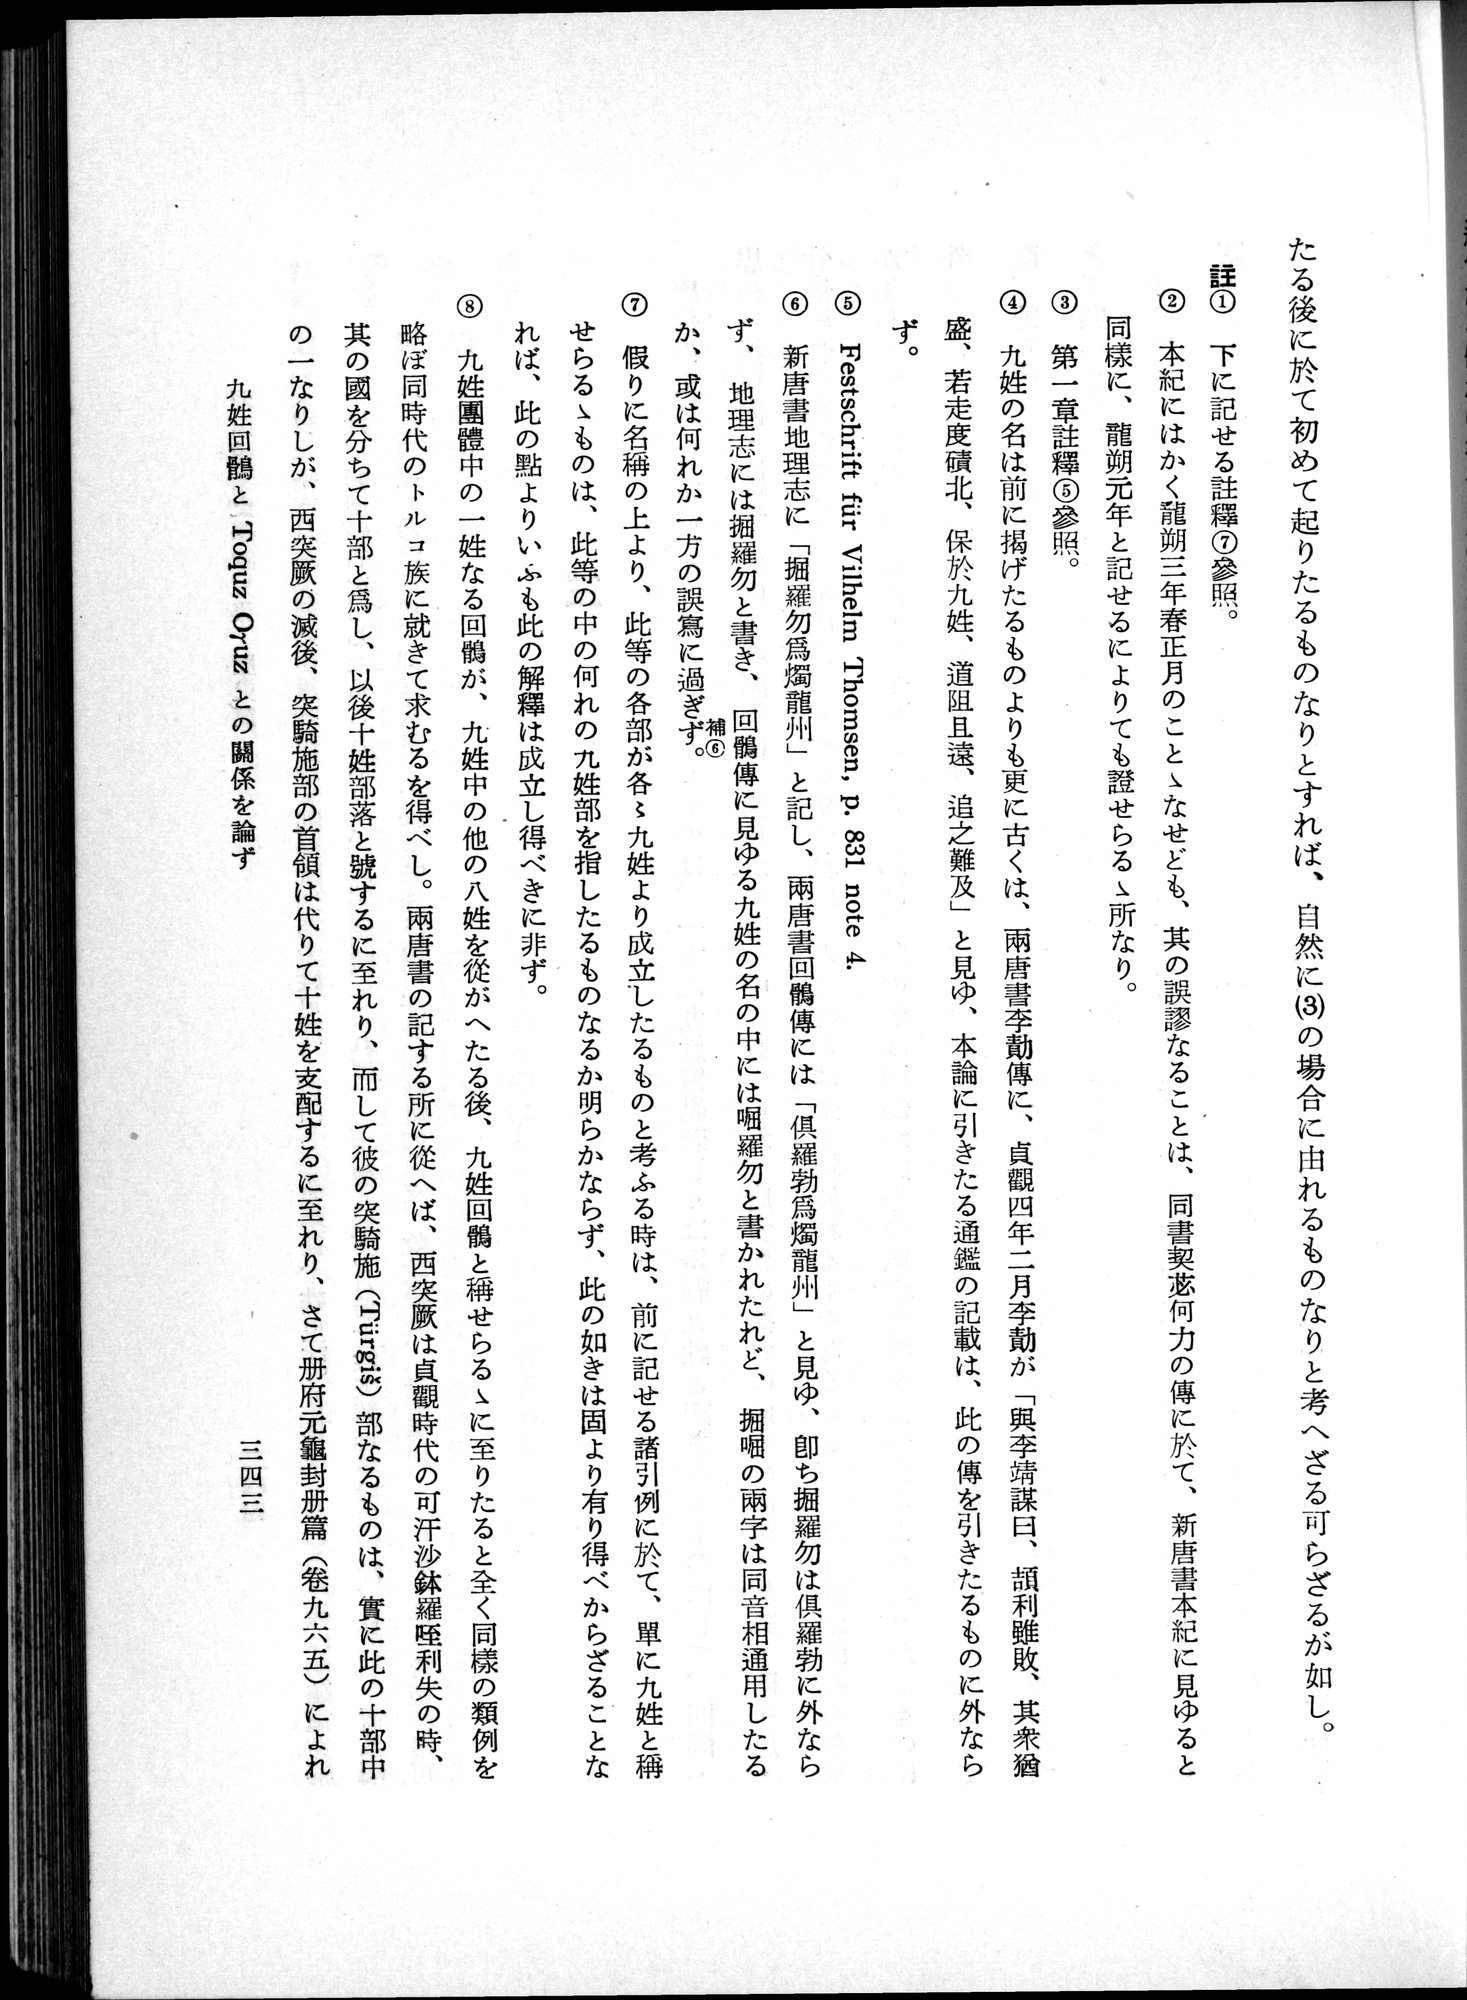 羽田博士史学論文集 : vol.1 / Page 381 (Grayscale High Resolution Image)